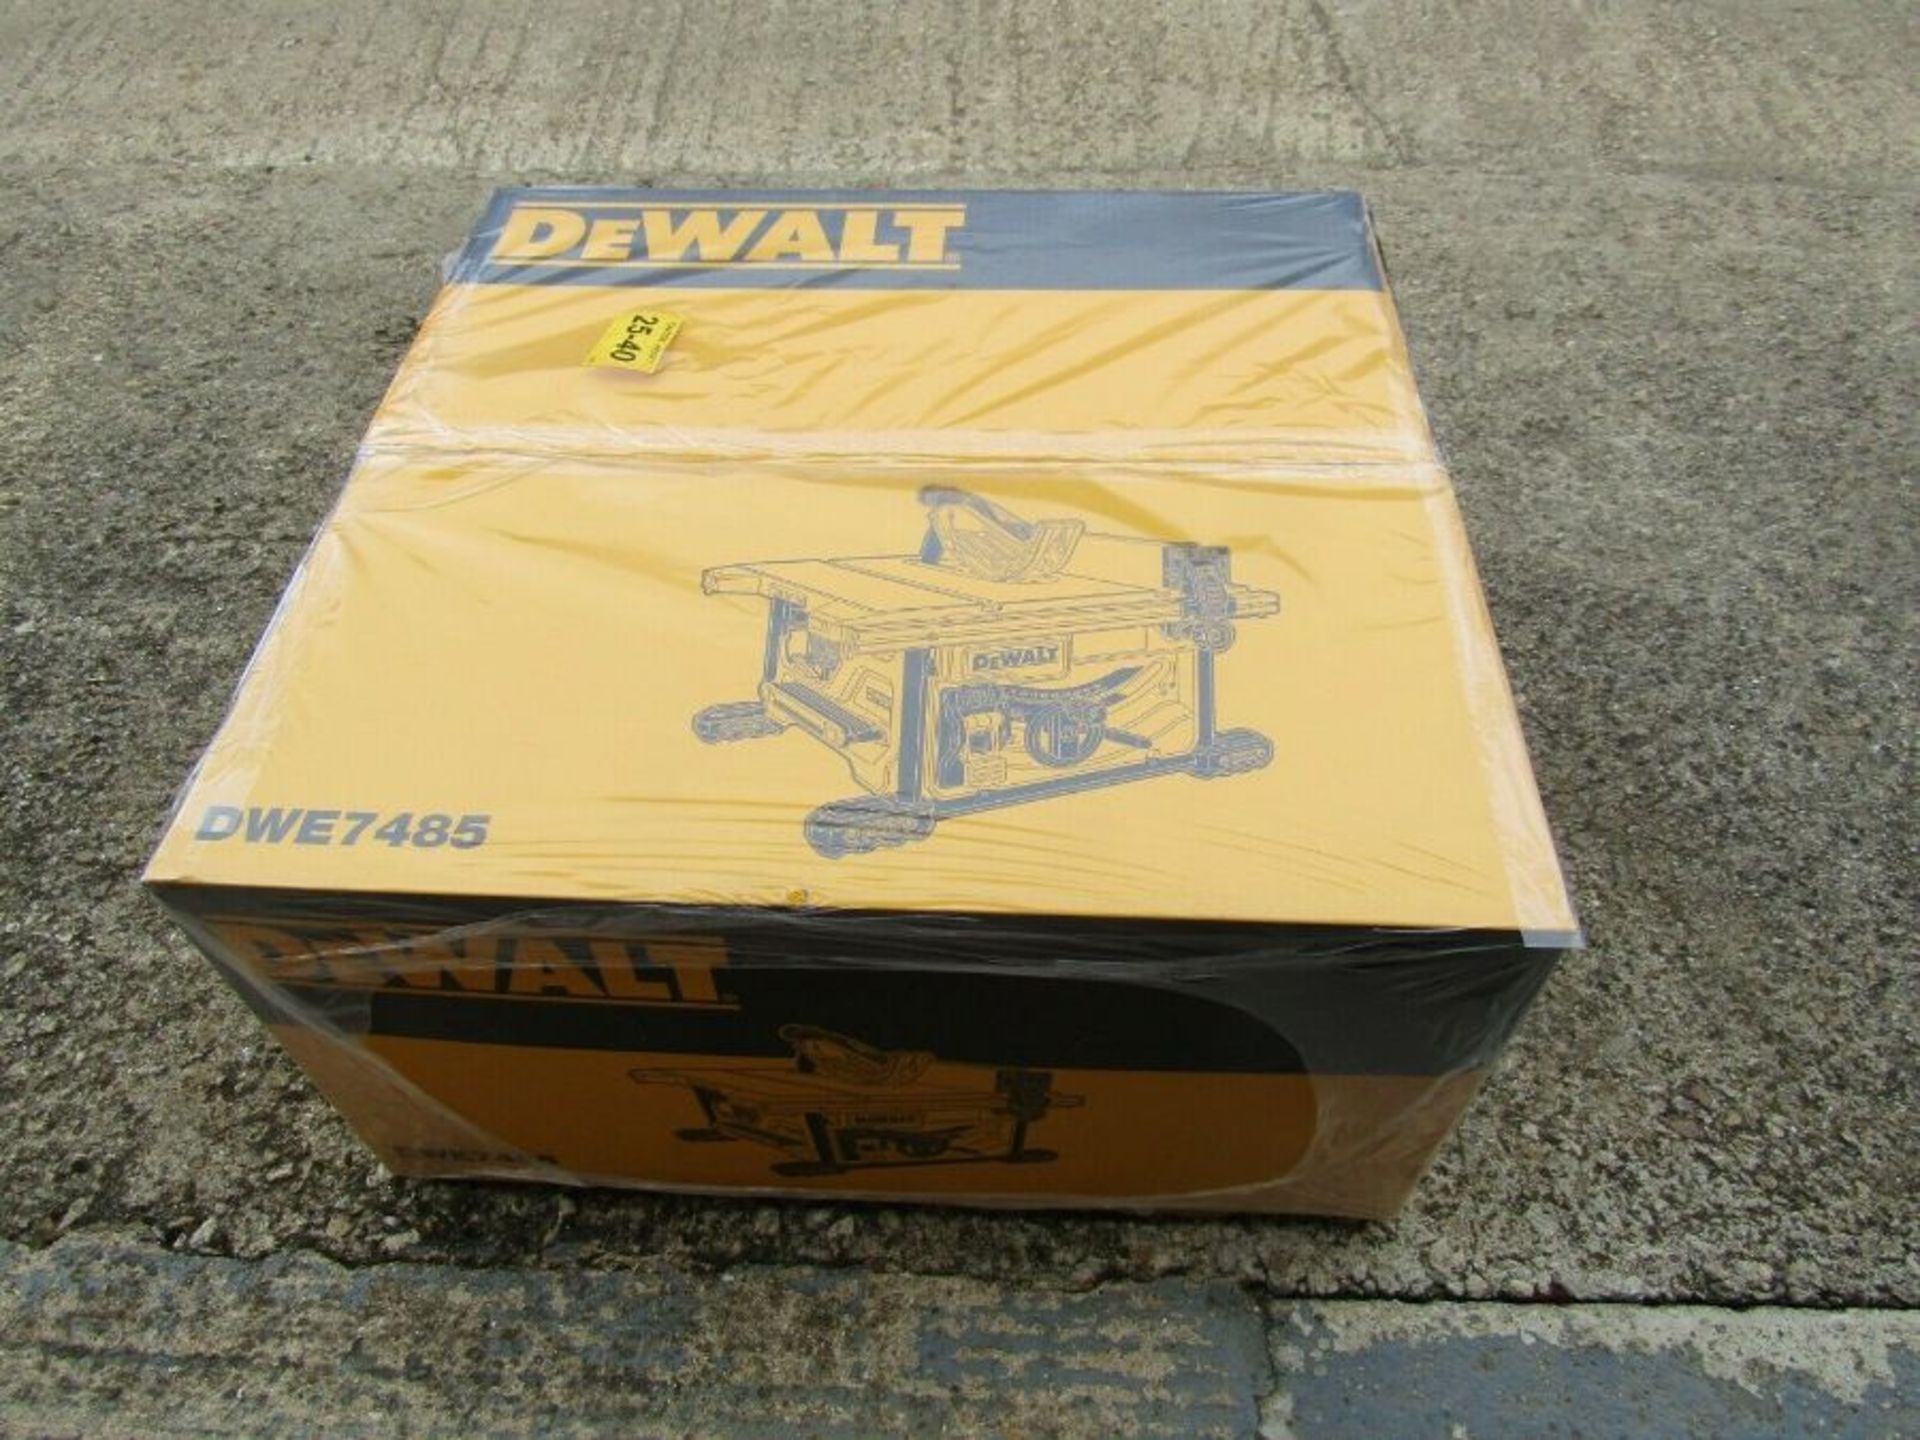 DeWalt DWE7485-GB 240V 210mm 1850W Electric Table Saw - Blkbfr1929434 - Image 2 of 3